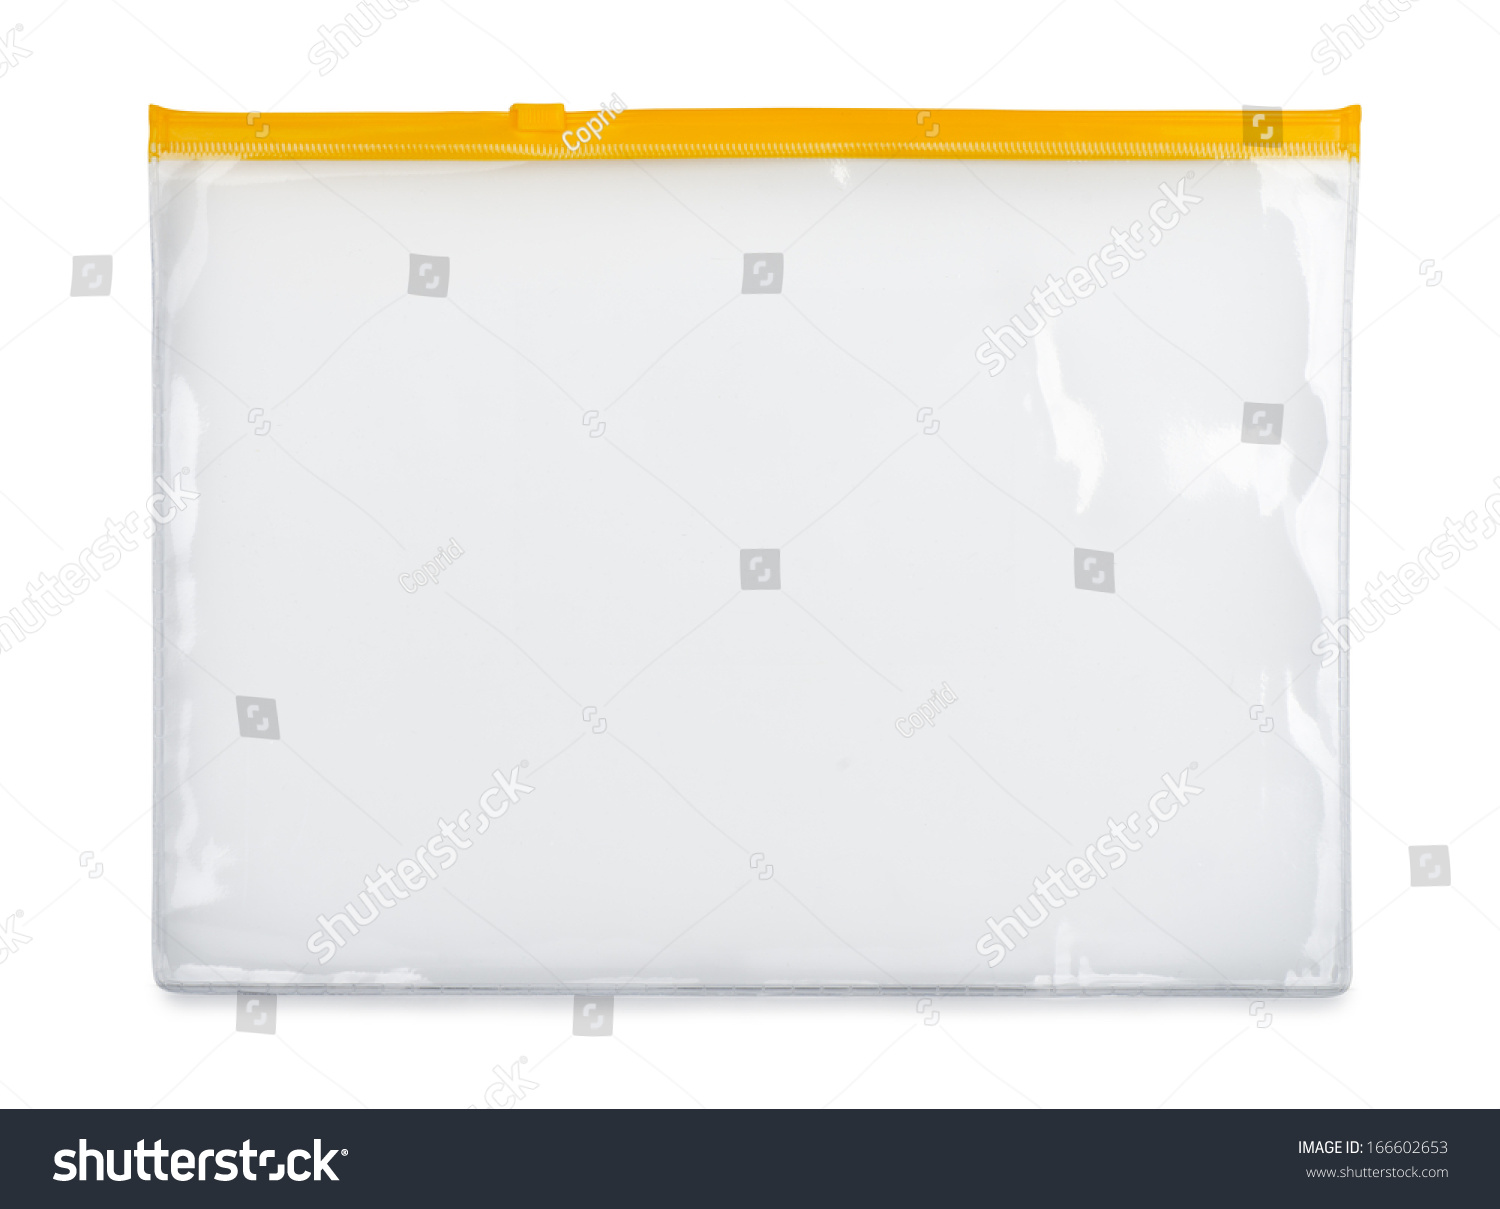 Plastic zipper bag isolated on white #166602653